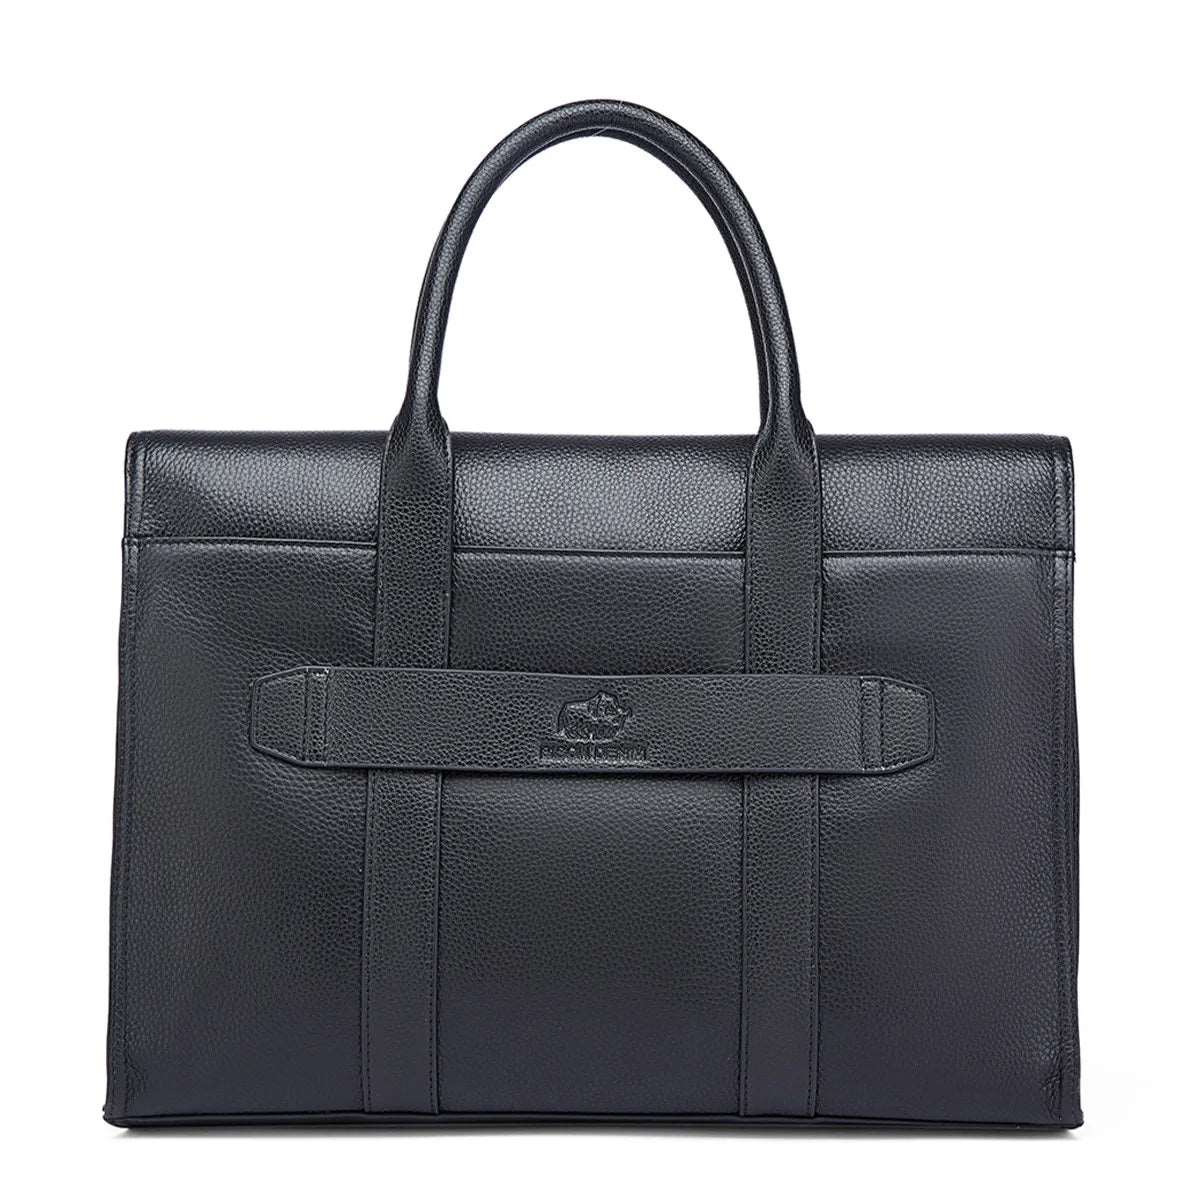 BISON DENIM Genuine Leather Business 14 inch Laptop Messenger Bag